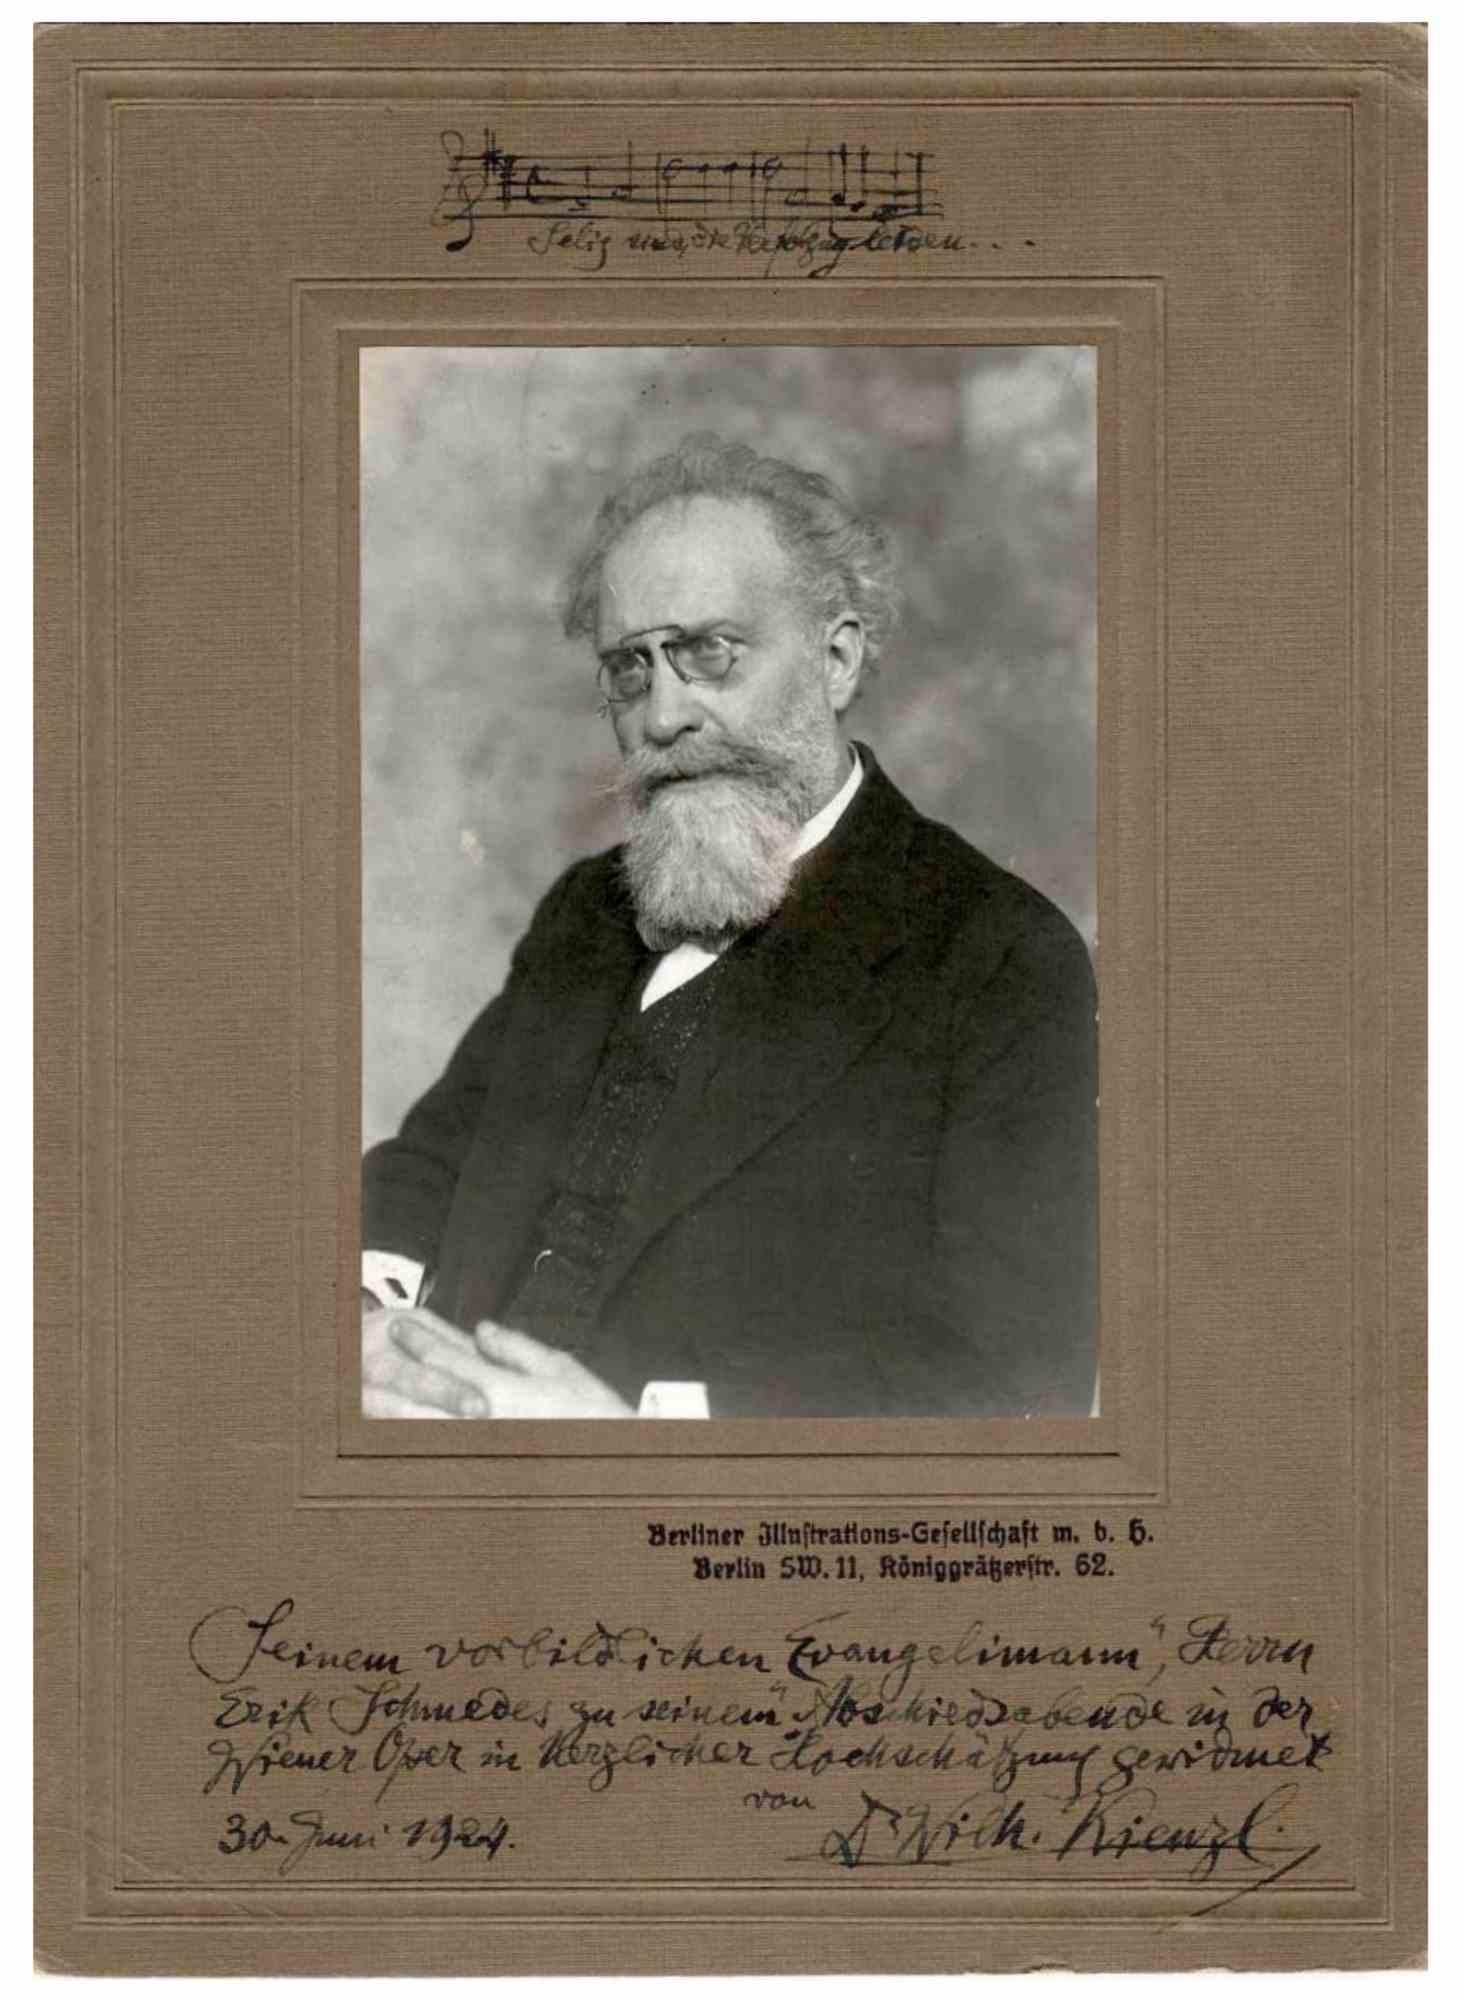 Unknown Figurative Photograph - Photographic Portrait and Autograph of Wilhelm Kienzl - 1924